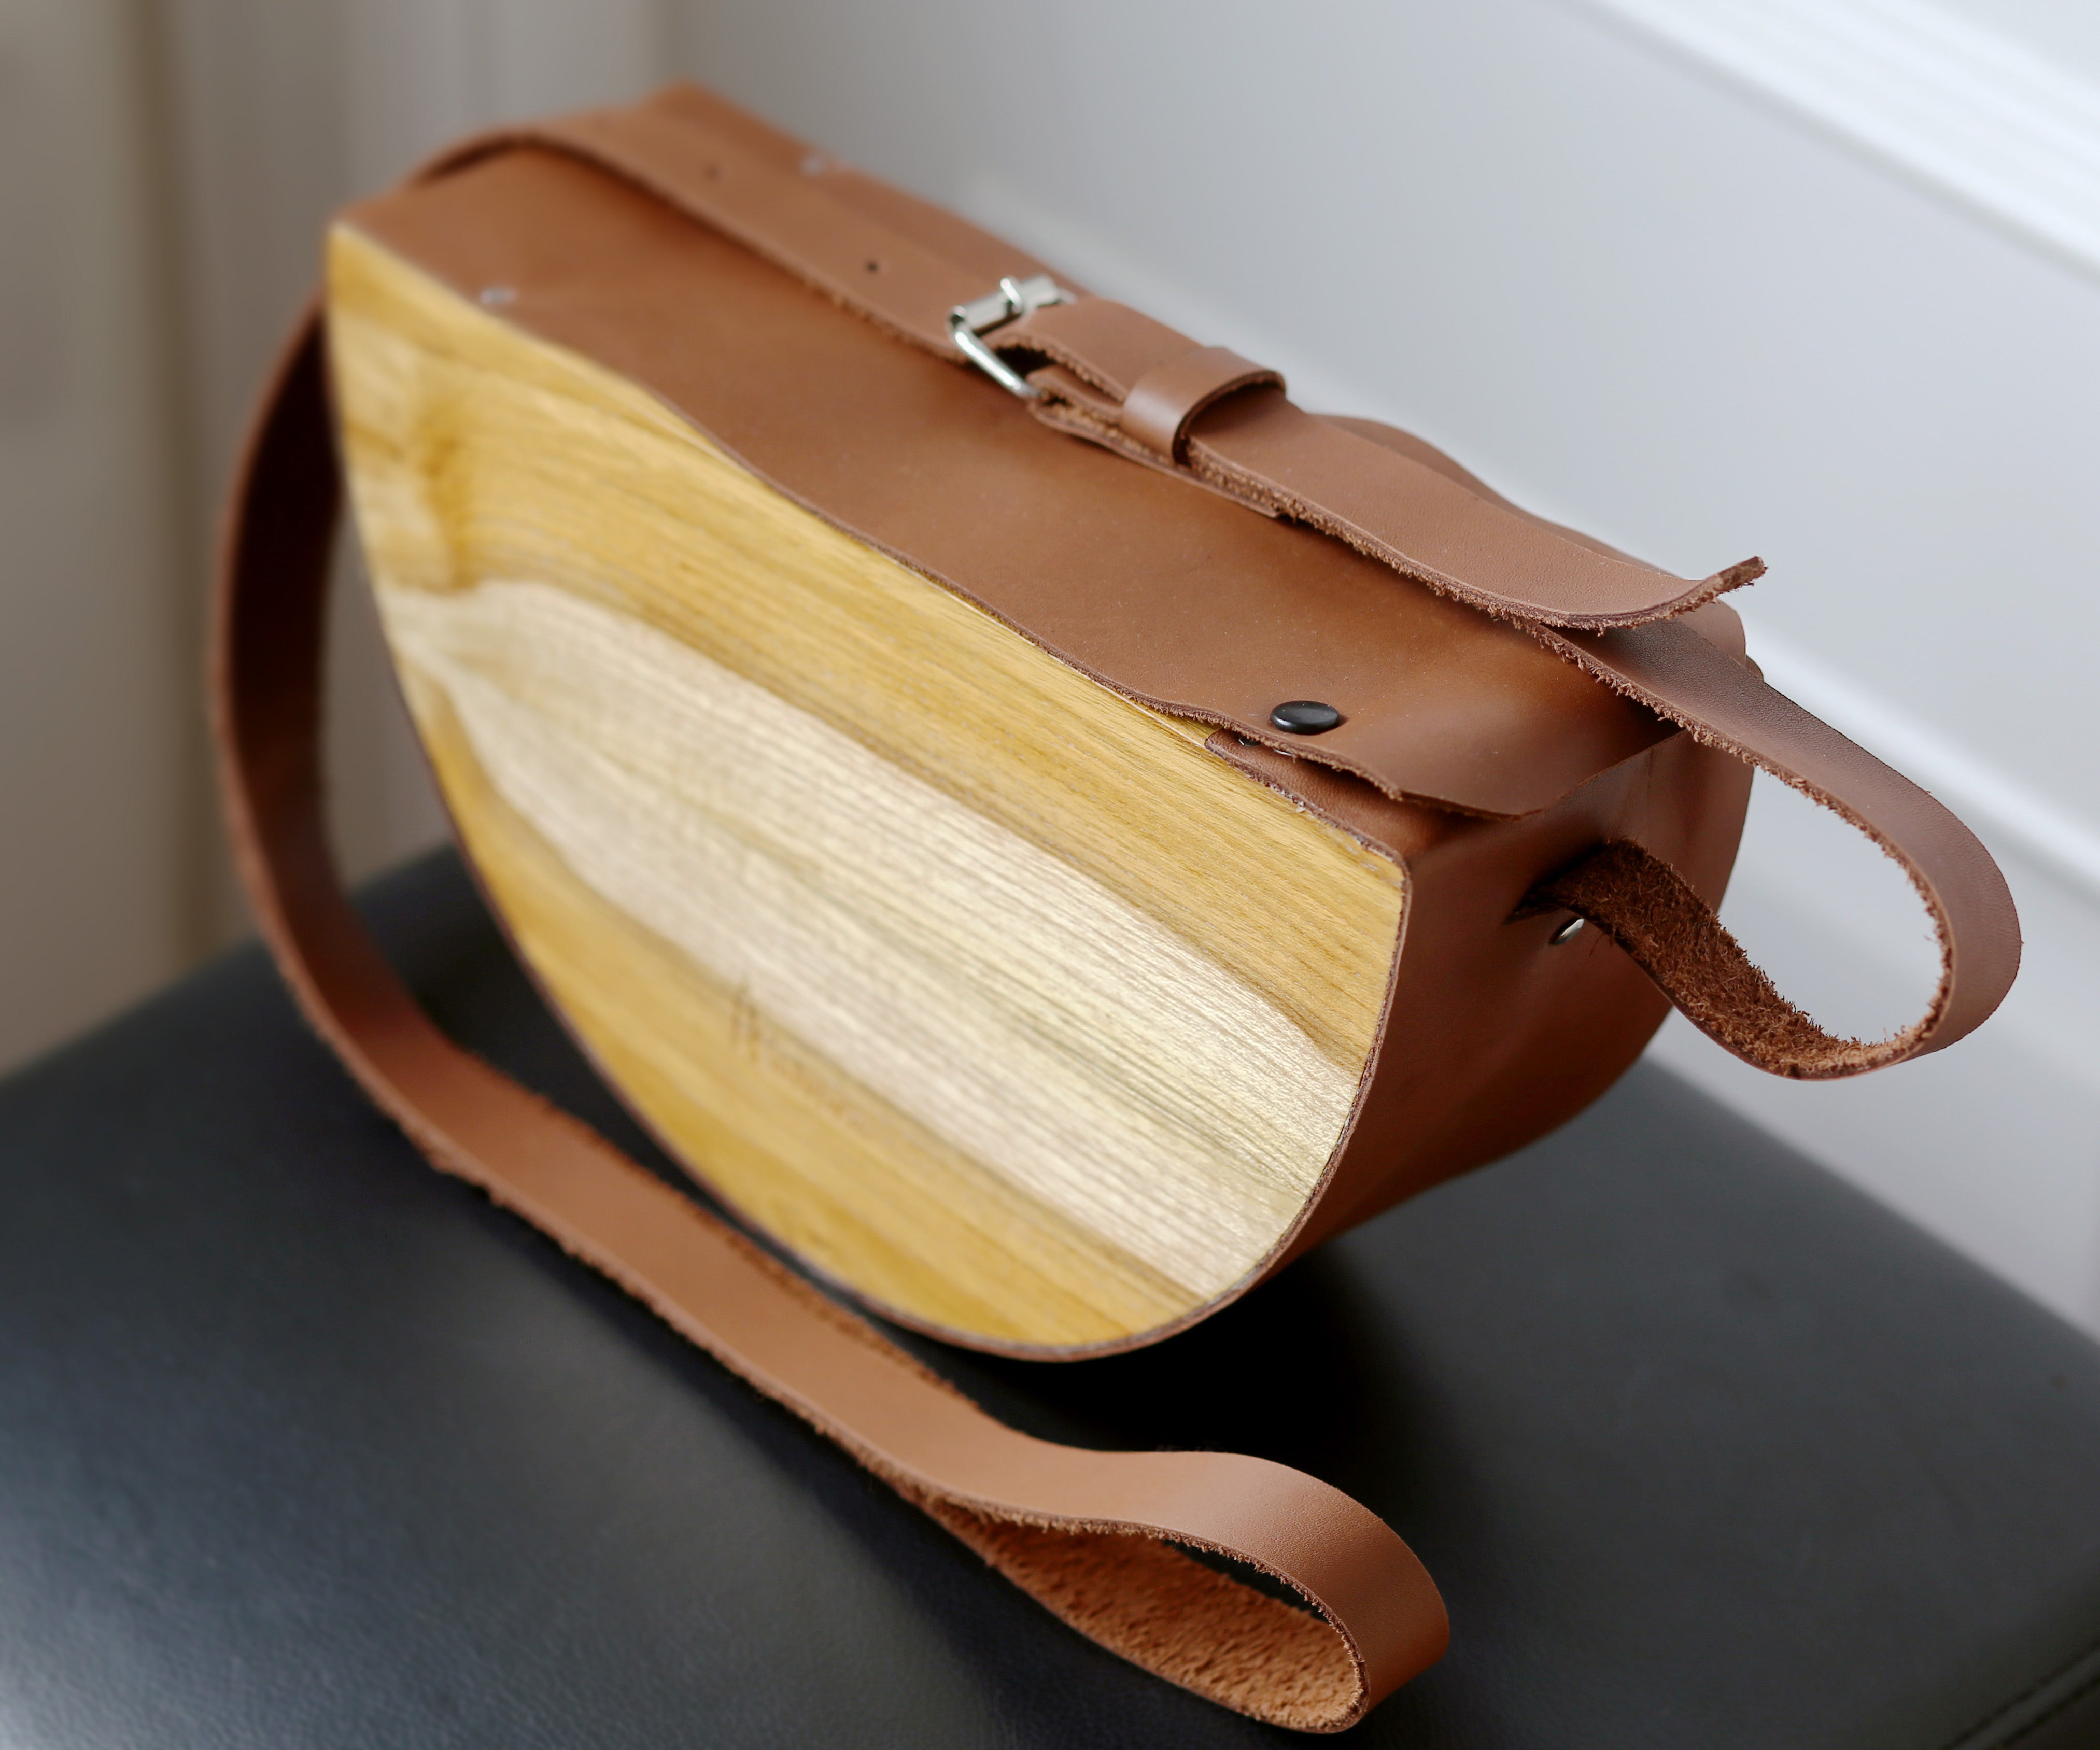 Wood and leather bag or ethnic bag bag is a mexico handbag, Clutch bag handmade premium bag, Ethical fashion bag, Brown cross body bag